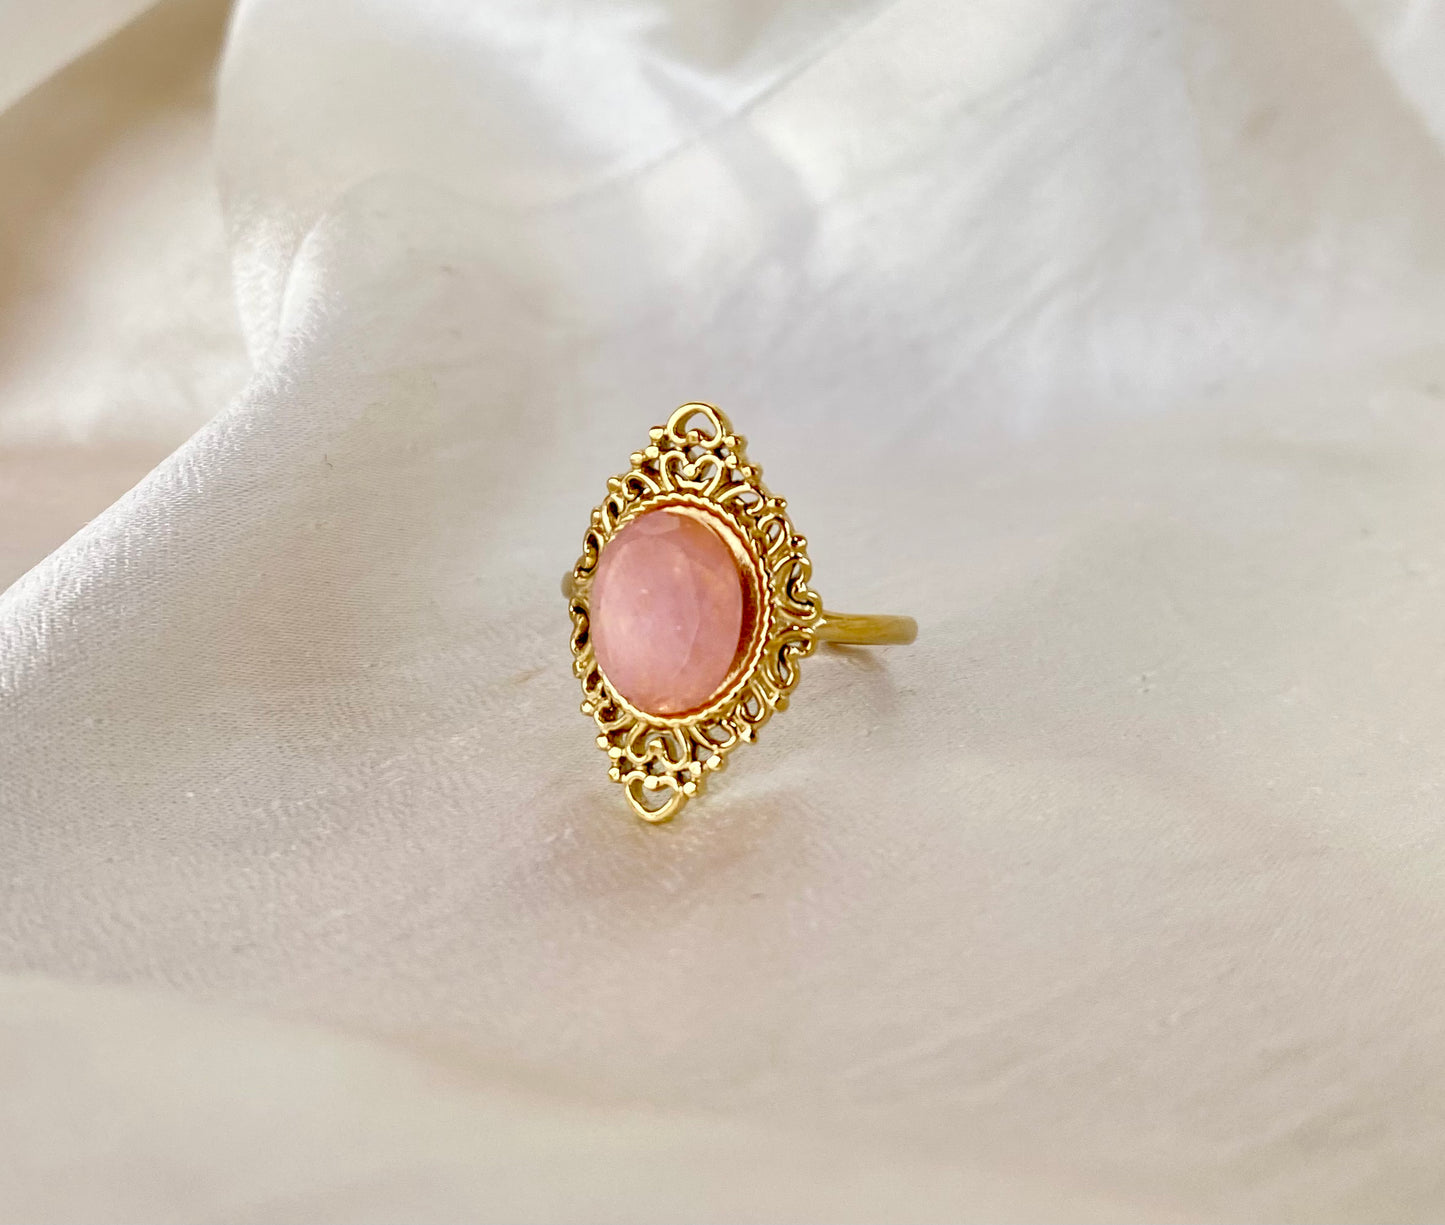 Ατσάλινο επίχρυσο δαχτυλίδι με ροζ ημιπολύτιμη πέτρα